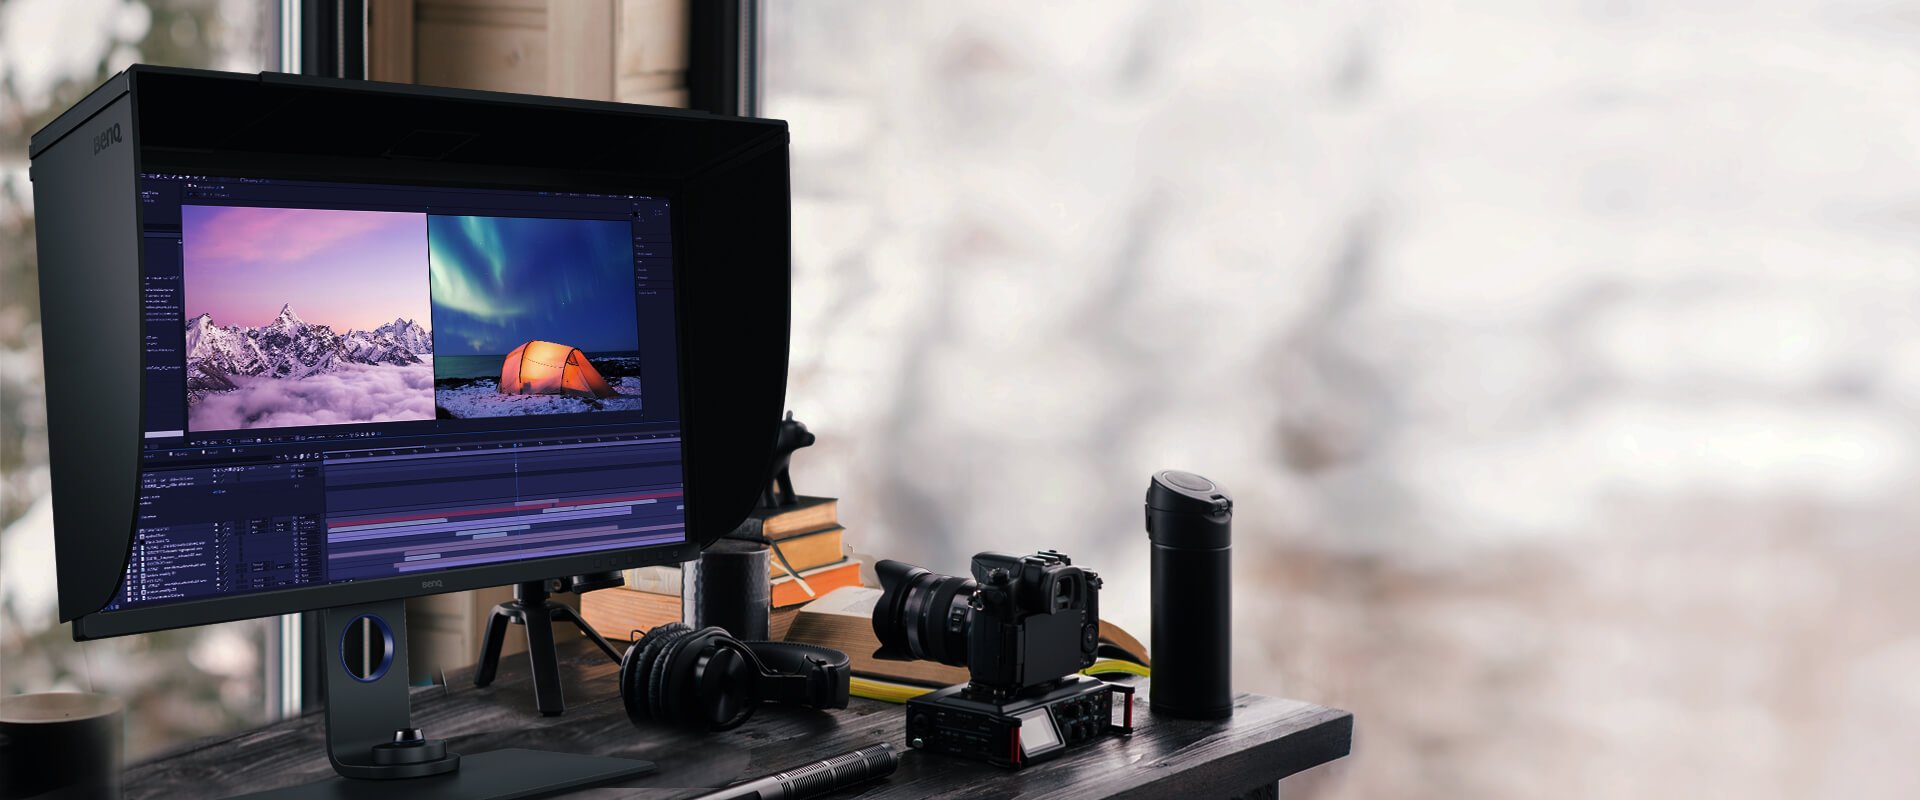 O sw271c ajuda os profissionais a obter os melhores resultados, com suporte para HDR e vários formatos de vídeo